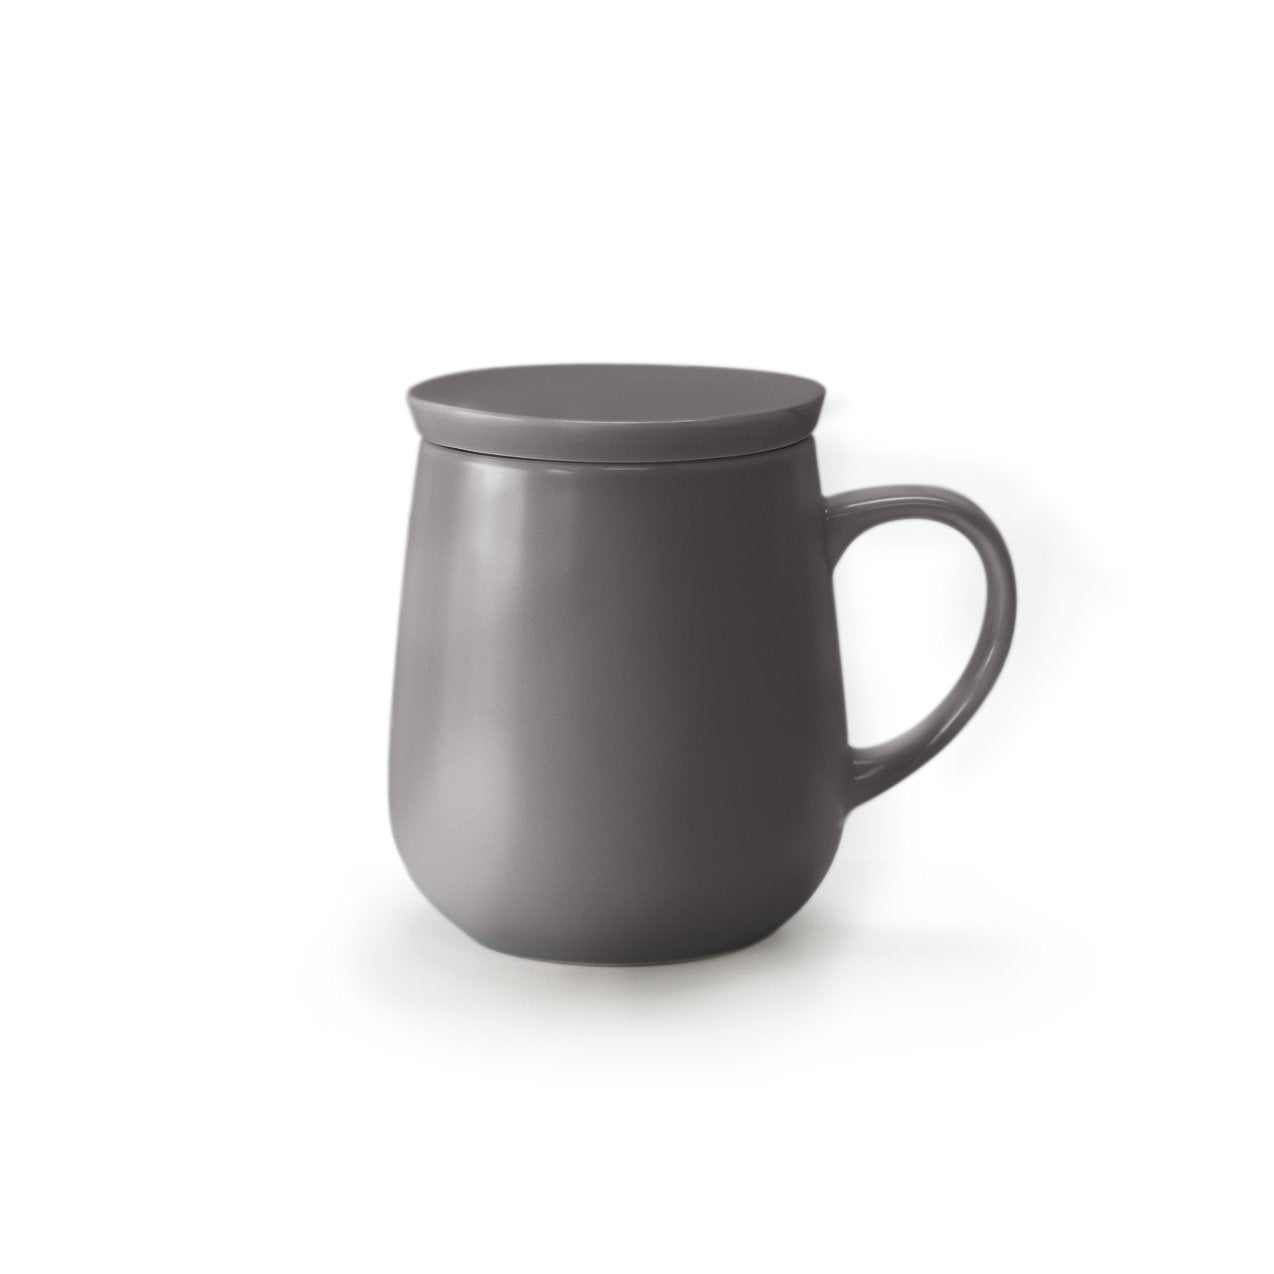 Small dark gray mug with lid